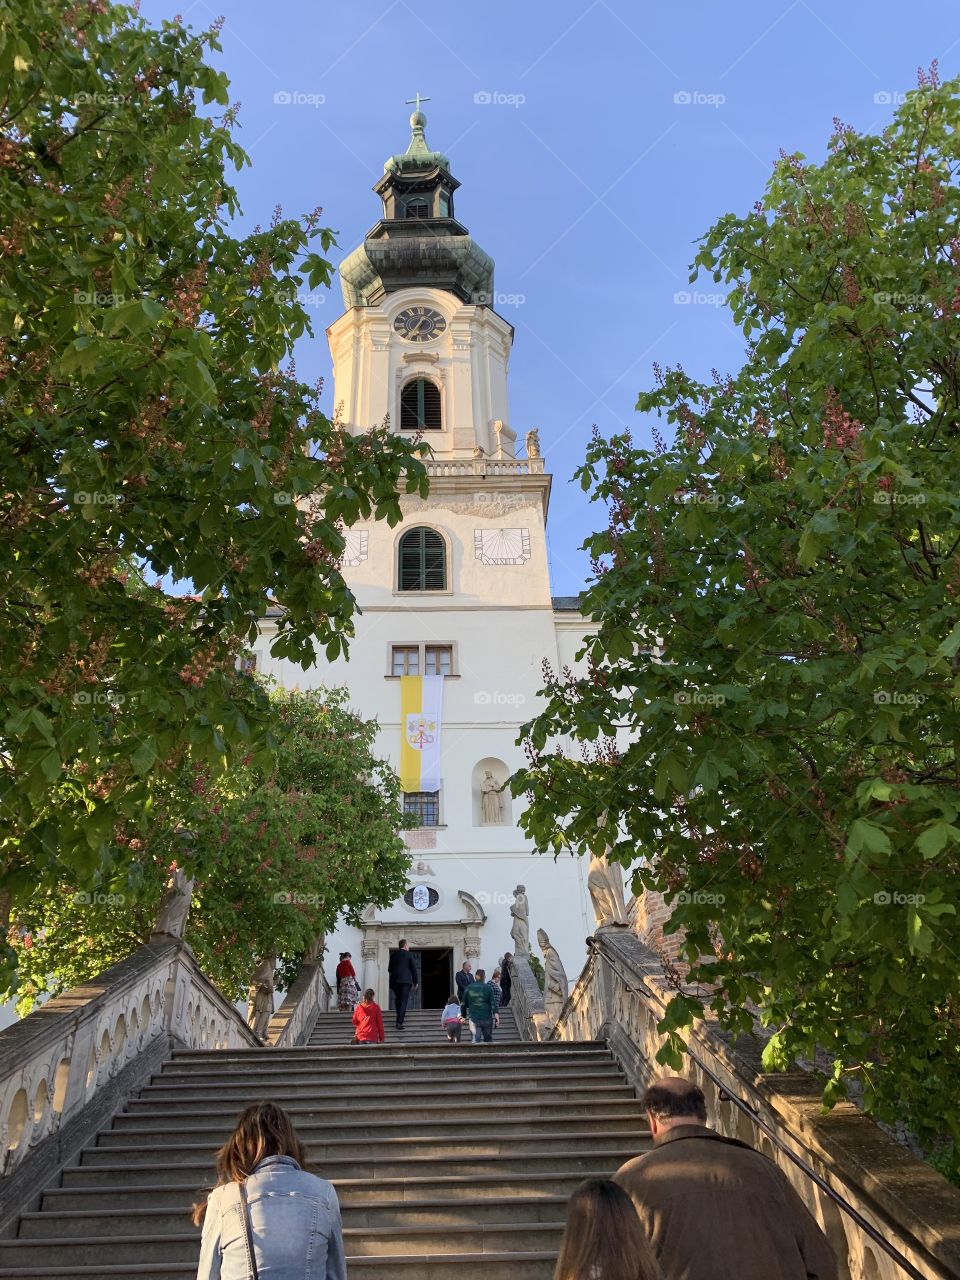 A church in Slovakia. 